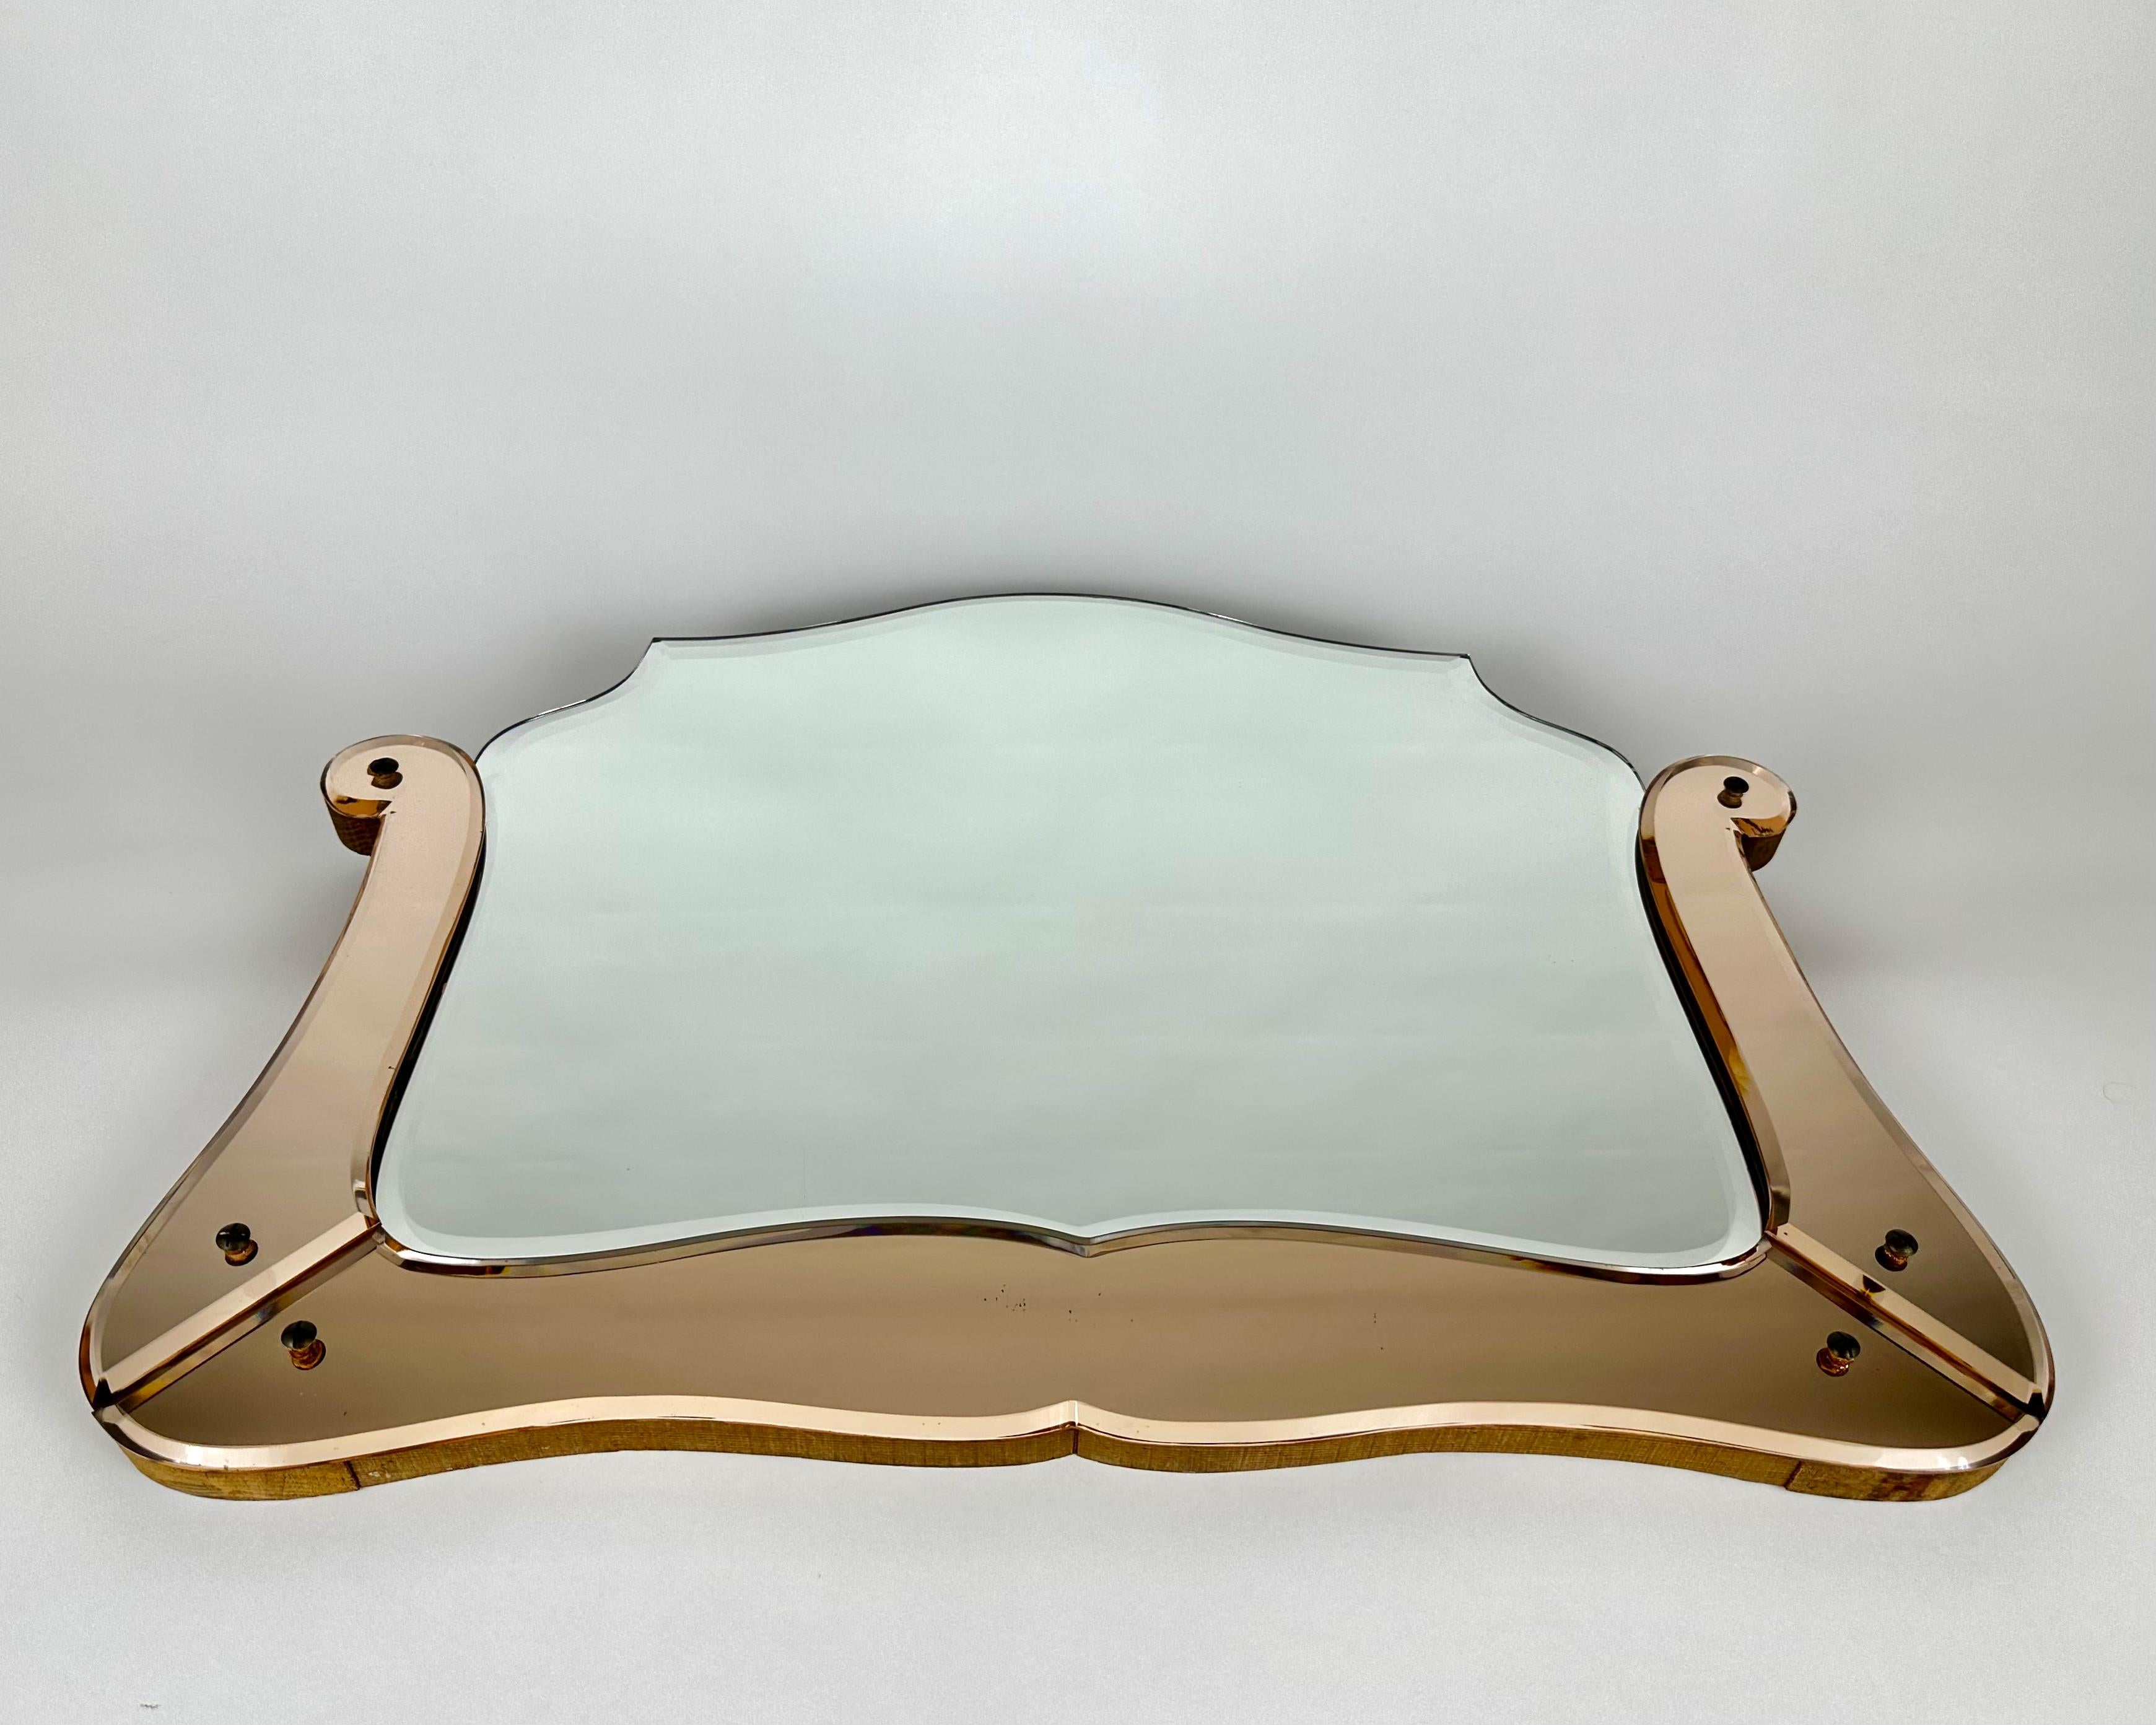 Verre biseauté Vanity Dresser Hallway Mirror.

Cet extraordinaire miroir exquis a été fabriqué au 20e siècle.

Avec sa forme géométrique épurée et sa construction impeccable, ce miroir s'intègre parfaitement à tous les styles d'intérieur, du